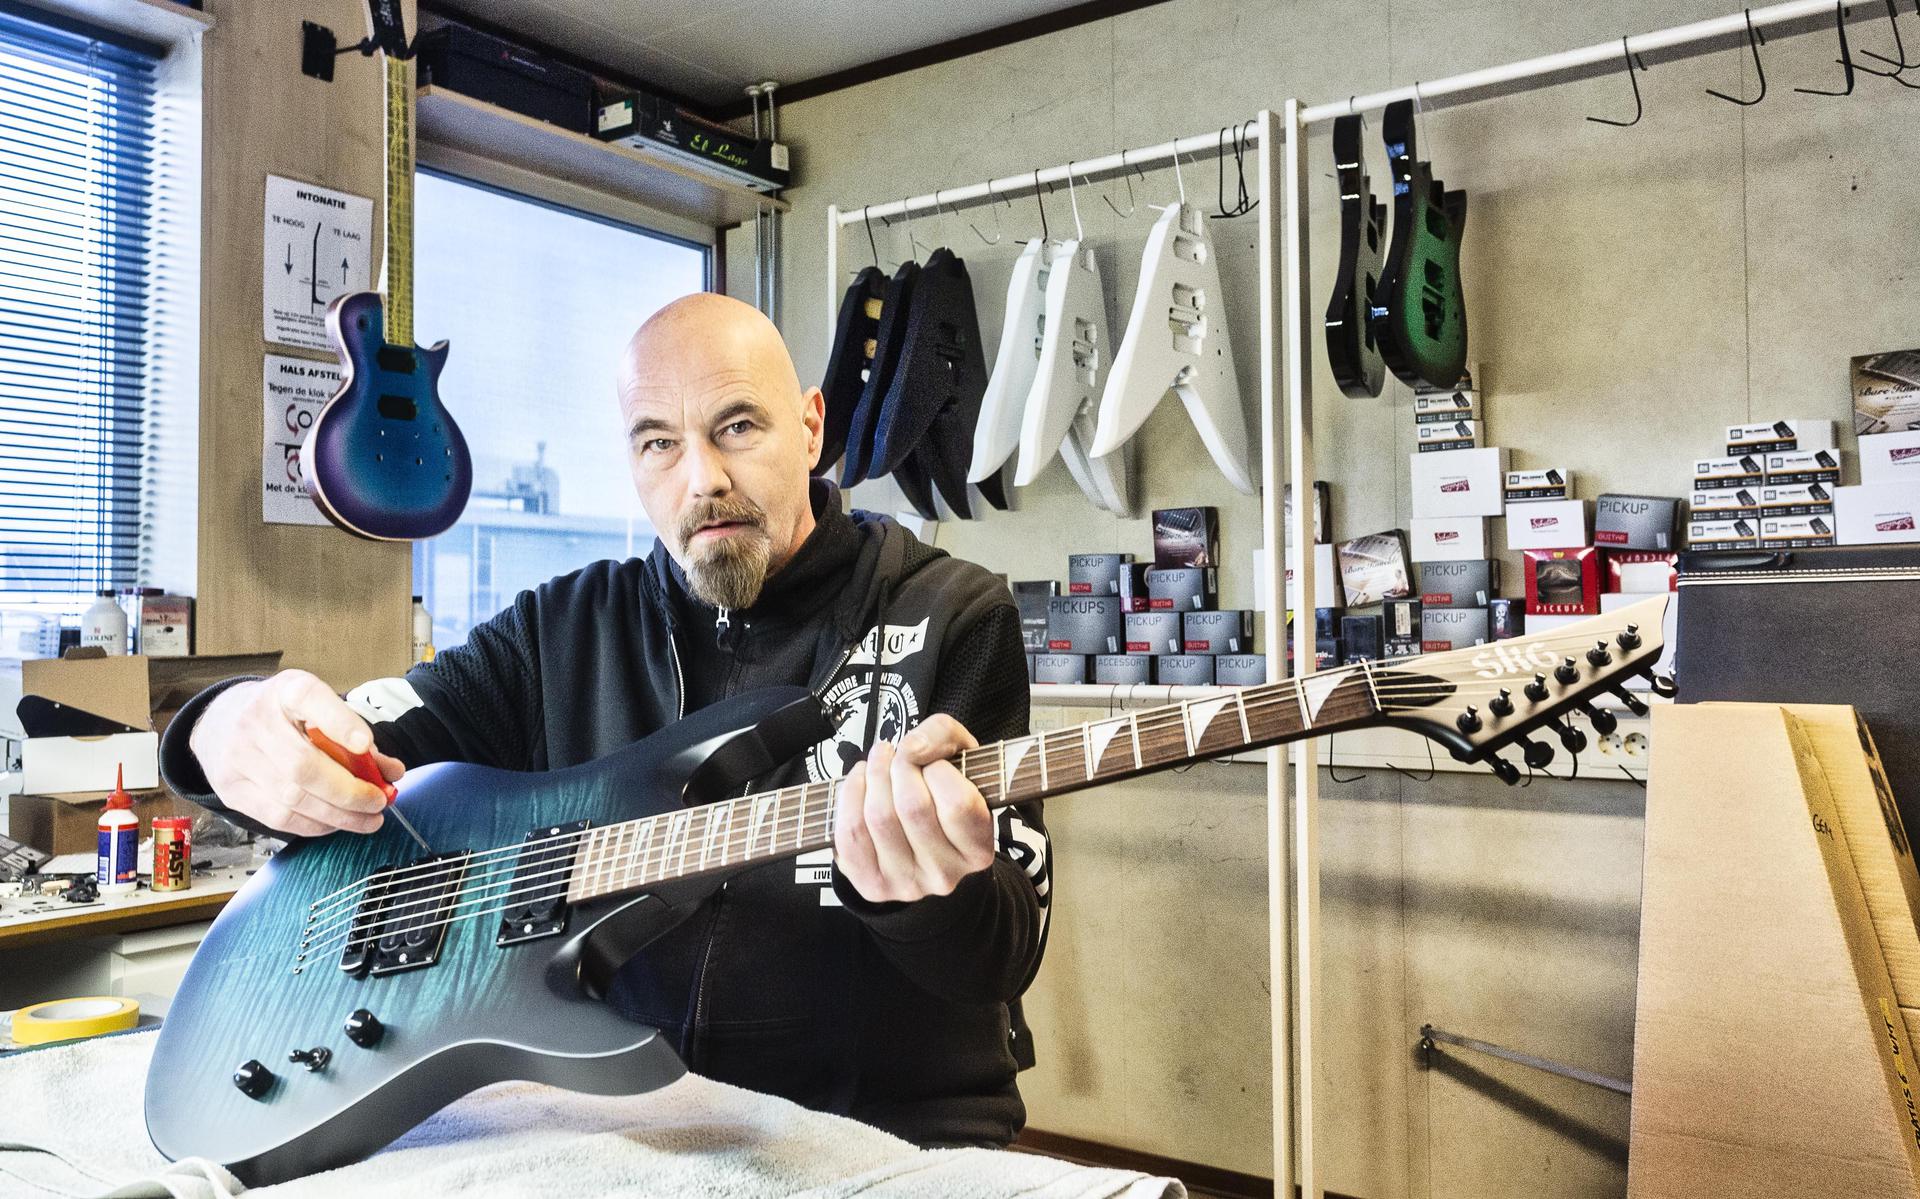 Serpent King Guitars Zuidwolde elektrische gitaren voor rockgitaristen. 'Helft van gitaren gaat naar Amerika' - Meppeler Courant